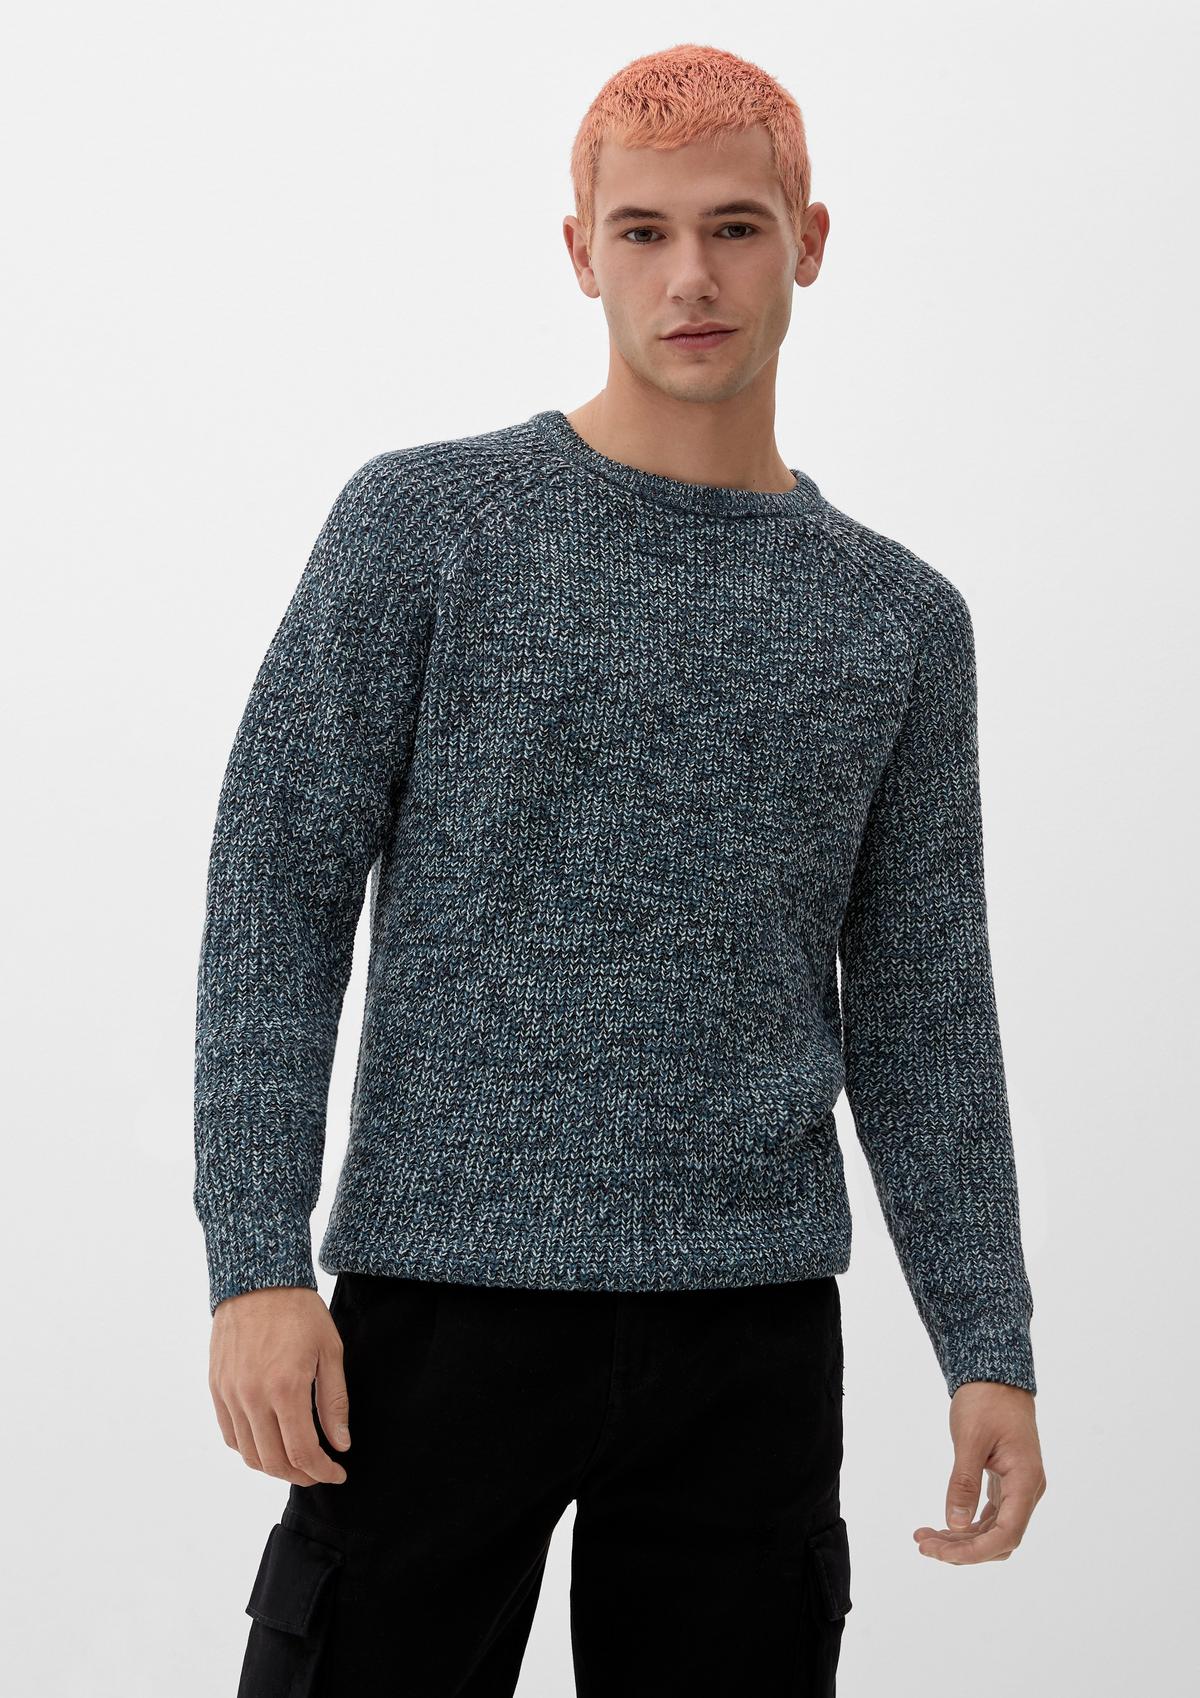 Pullover aus weichem Strick - dunkles türkis